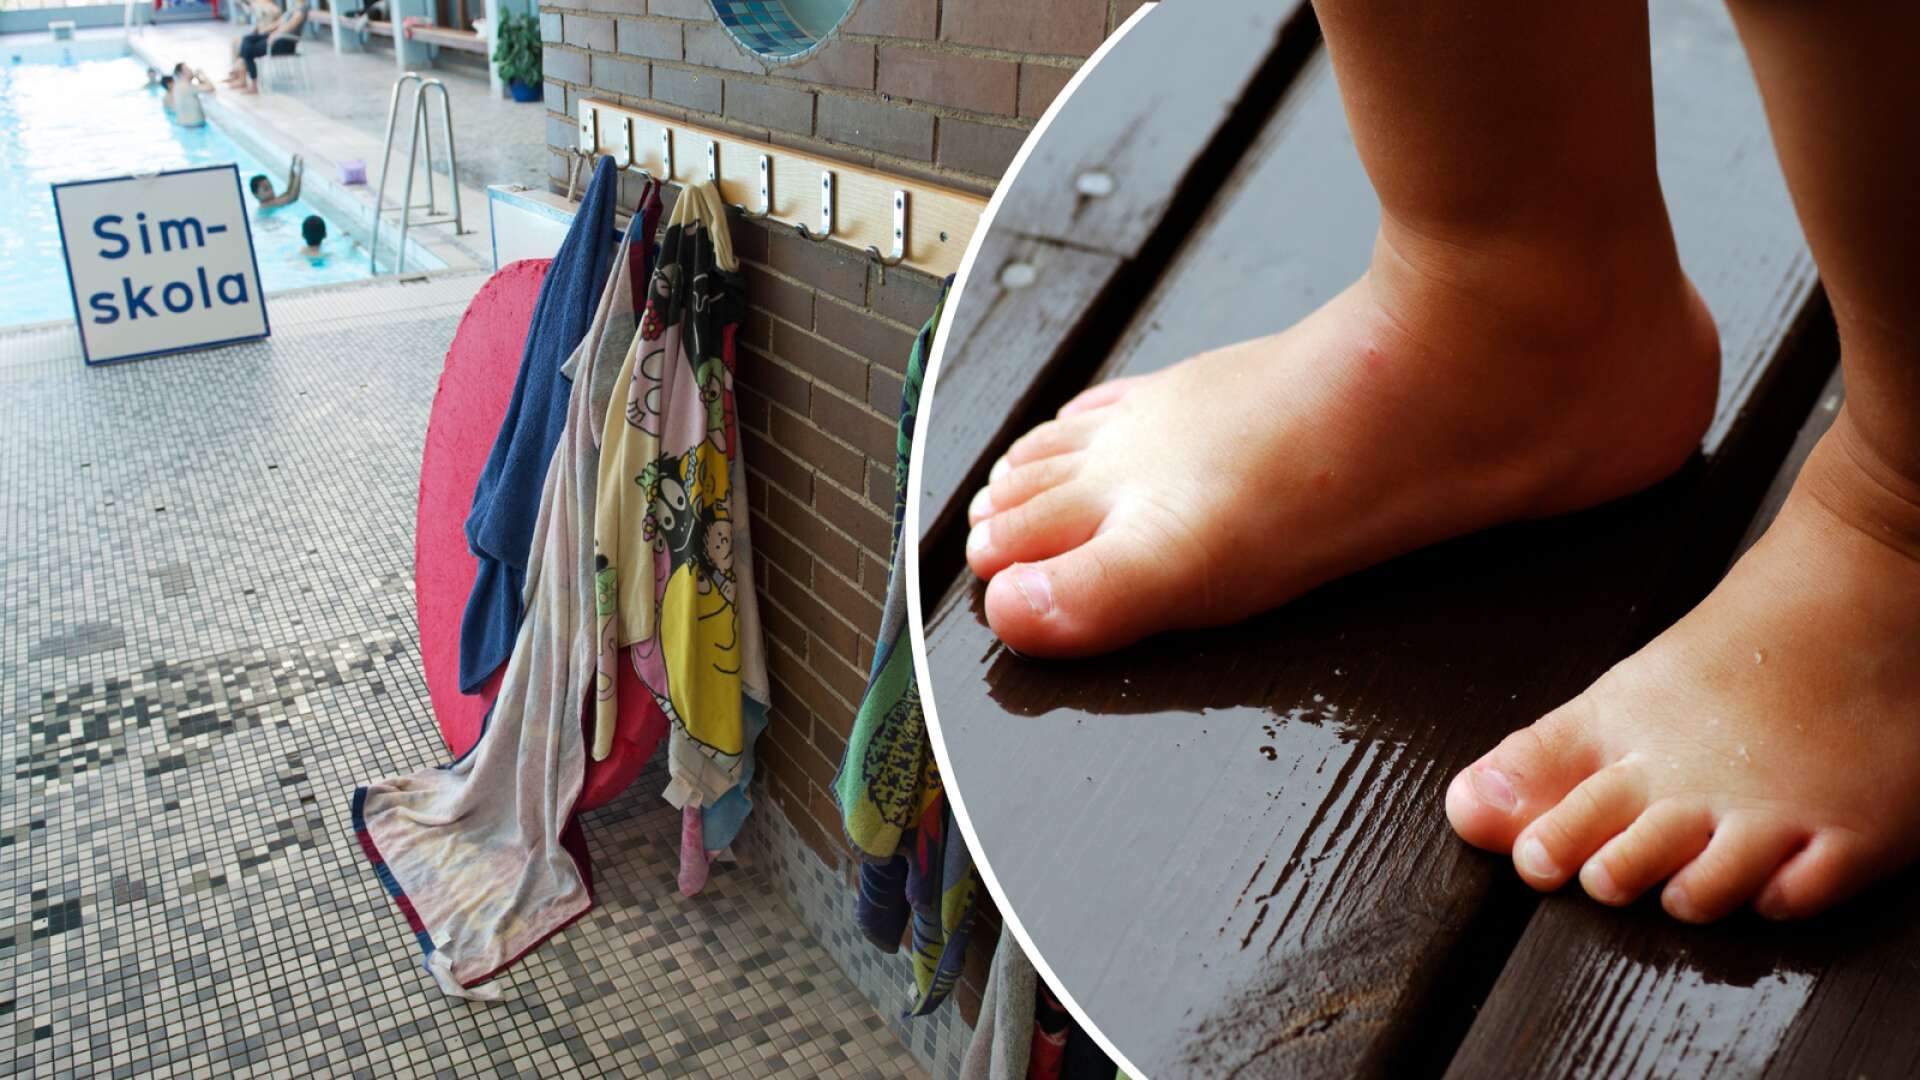 6-åriga Jasmine fick på nytt badhusfötter efter besök på Hagfors badhus. Fötterna på bilden har inget med själva händelsen att göra.